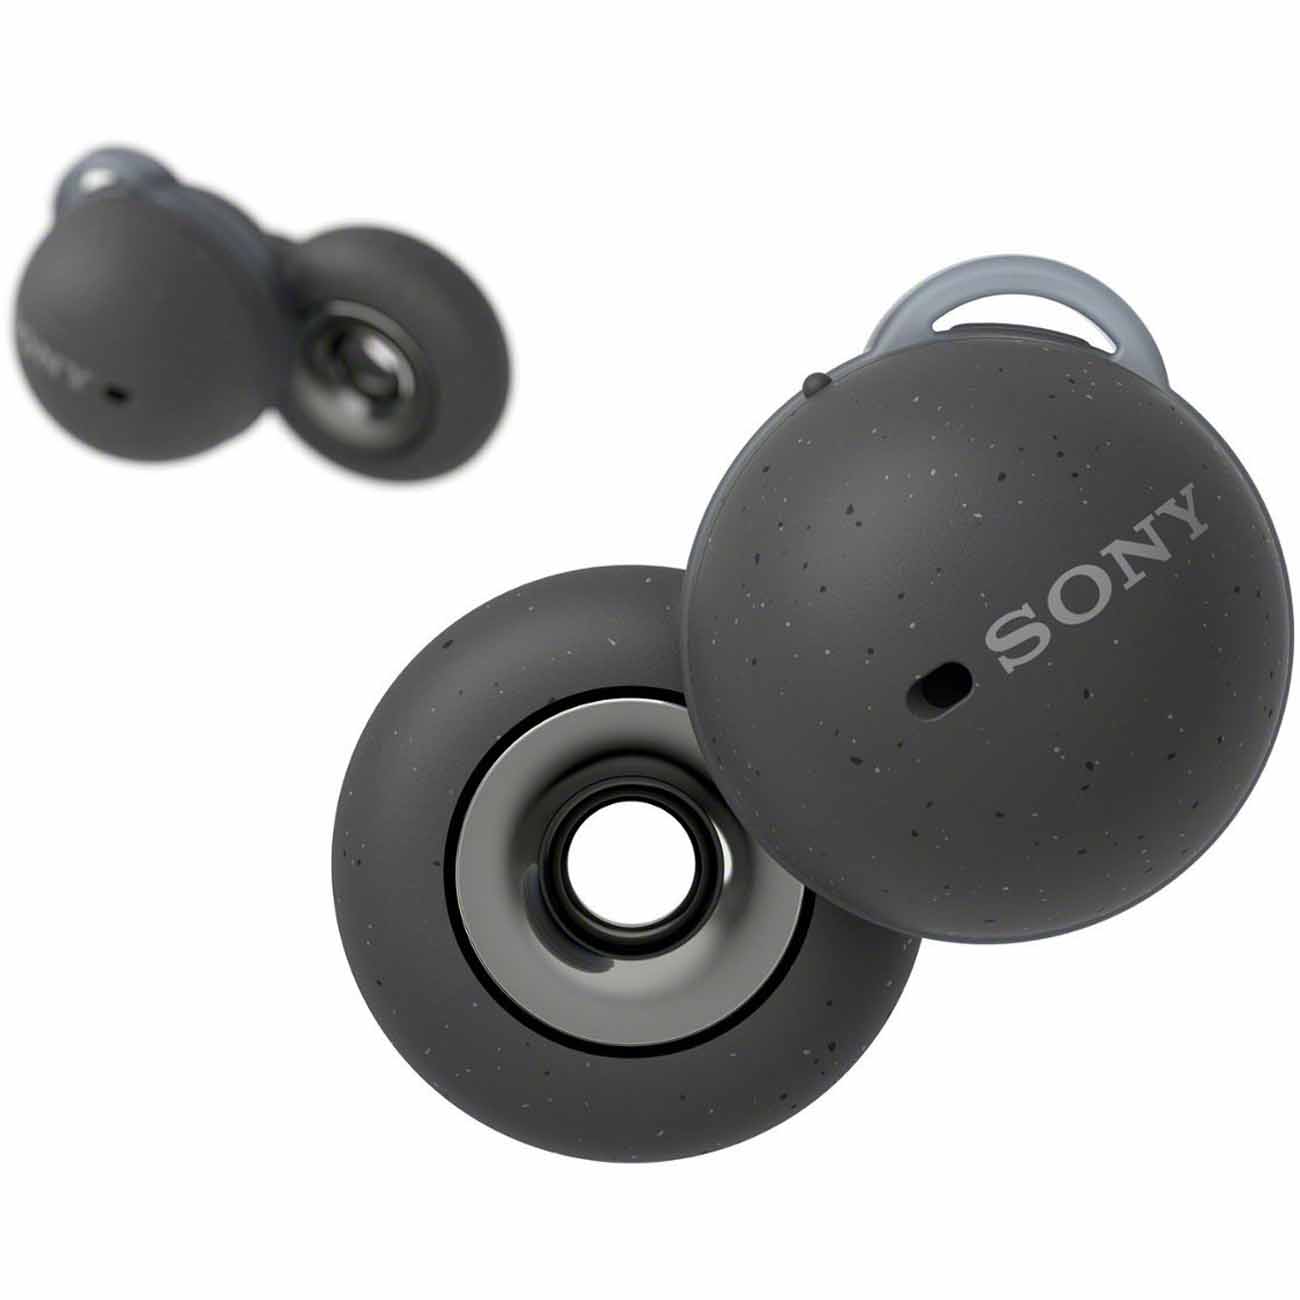 Sony LinkBuds True Wireless Open-Ear Earbuds in dark gray